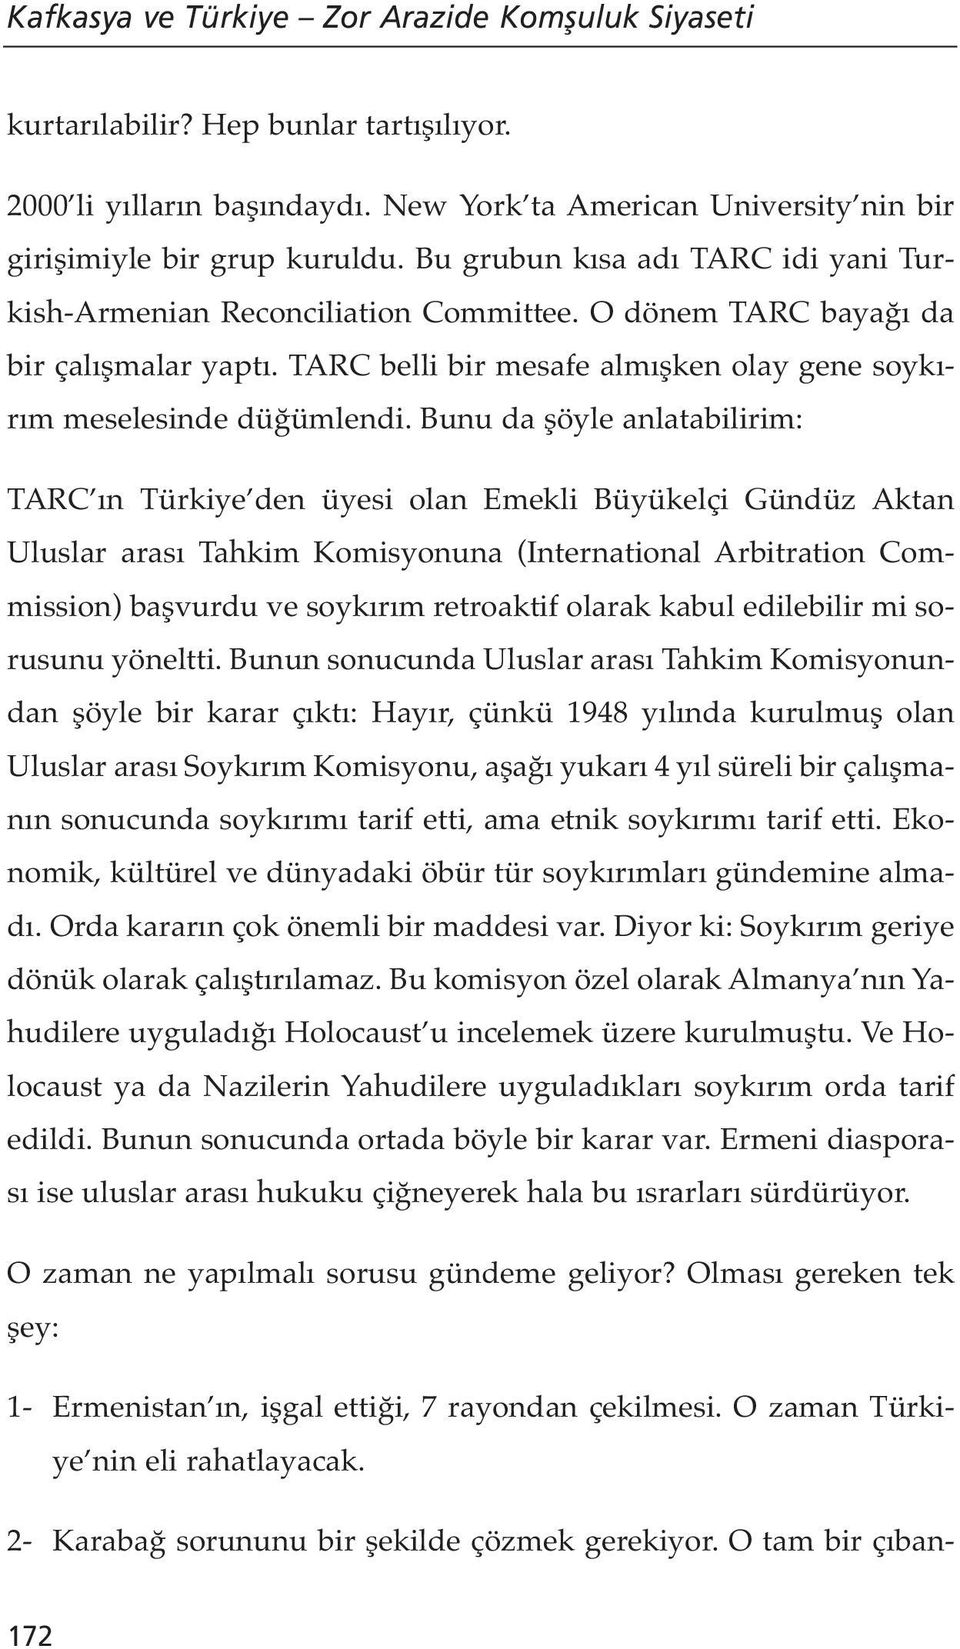 Bunu da şöyle anlatabilirim: TARC ın Türkiye den üyesi olan Emekli Büyükelçi Gündüz Aktan Uluslar arası Tahkim Komisyonuna (International Arbitration Commission) başvurdu ve soykırım retroaktif